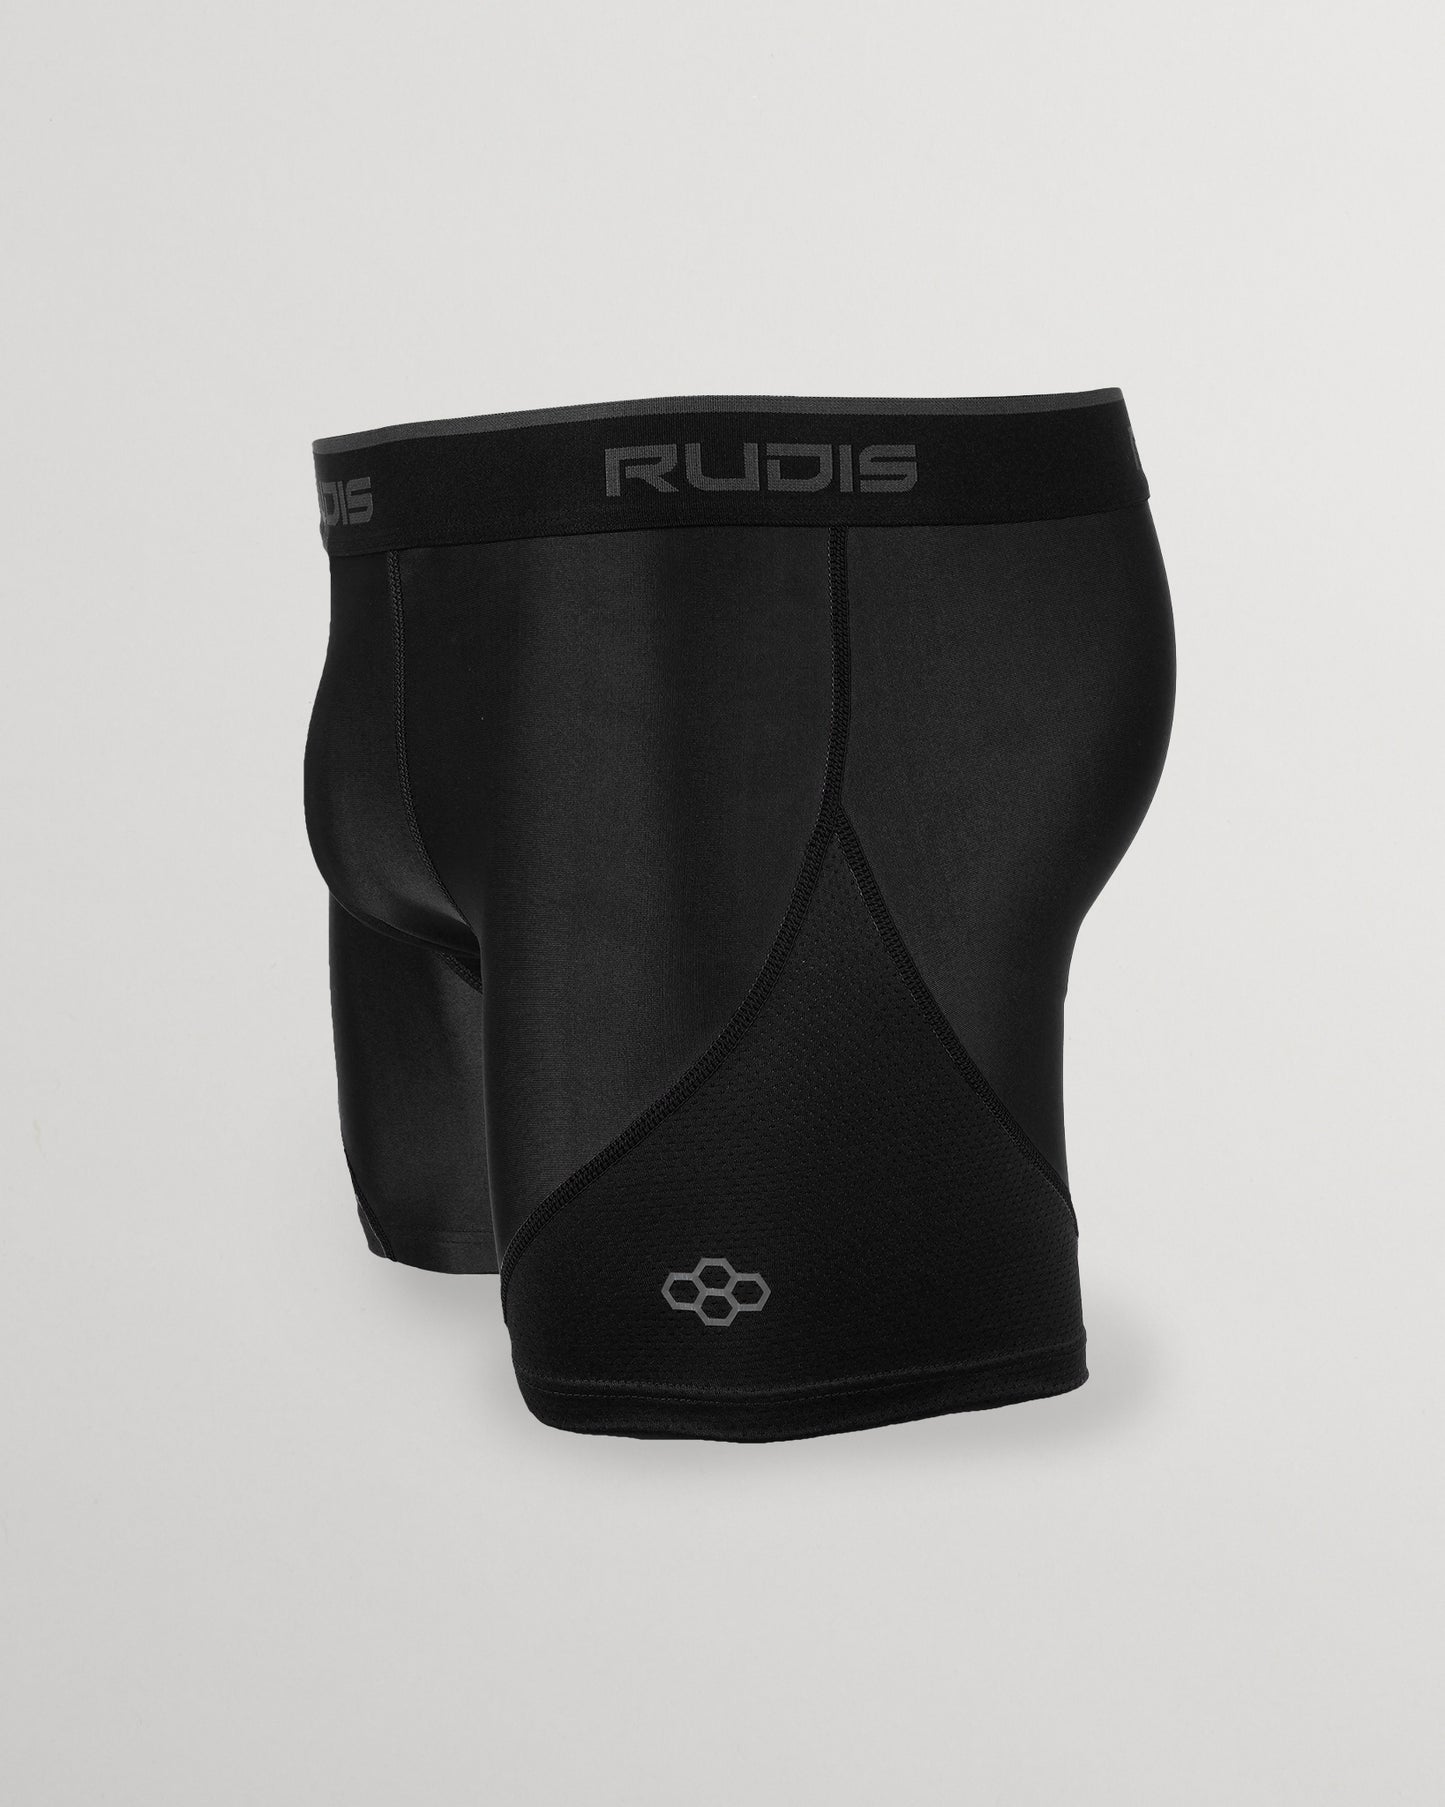 RUDIS Essential Black/Black Adult Boxer Brief